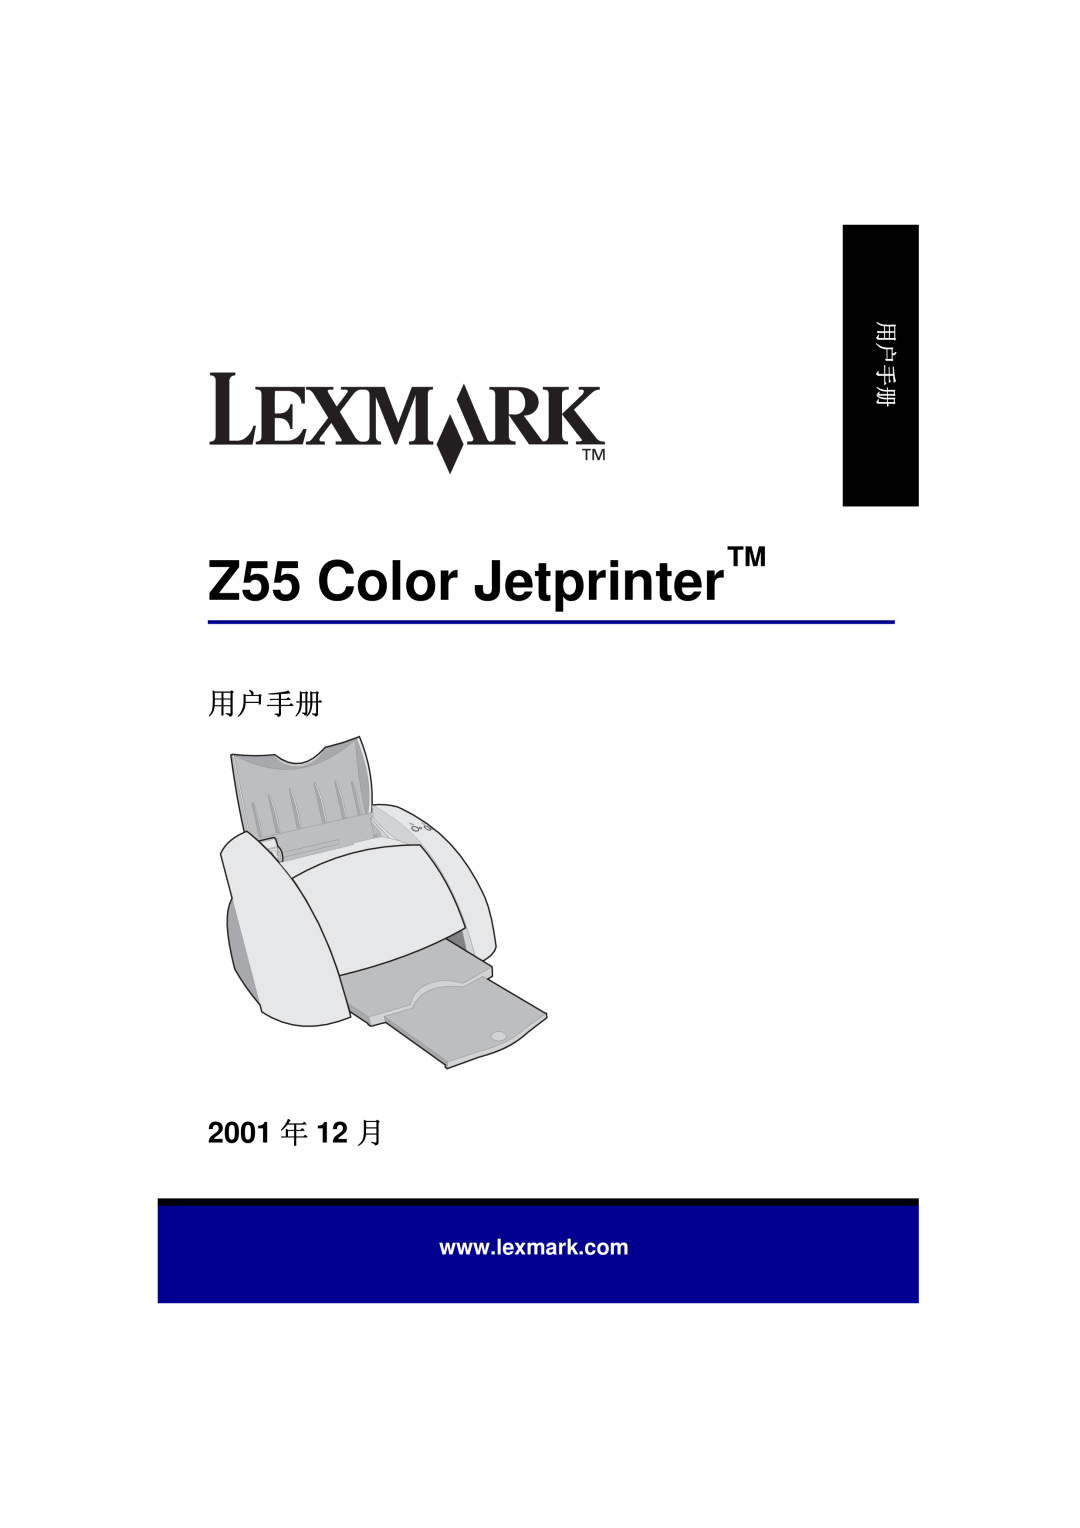 Univex manual Z55 Color Jetprinter, 2001 